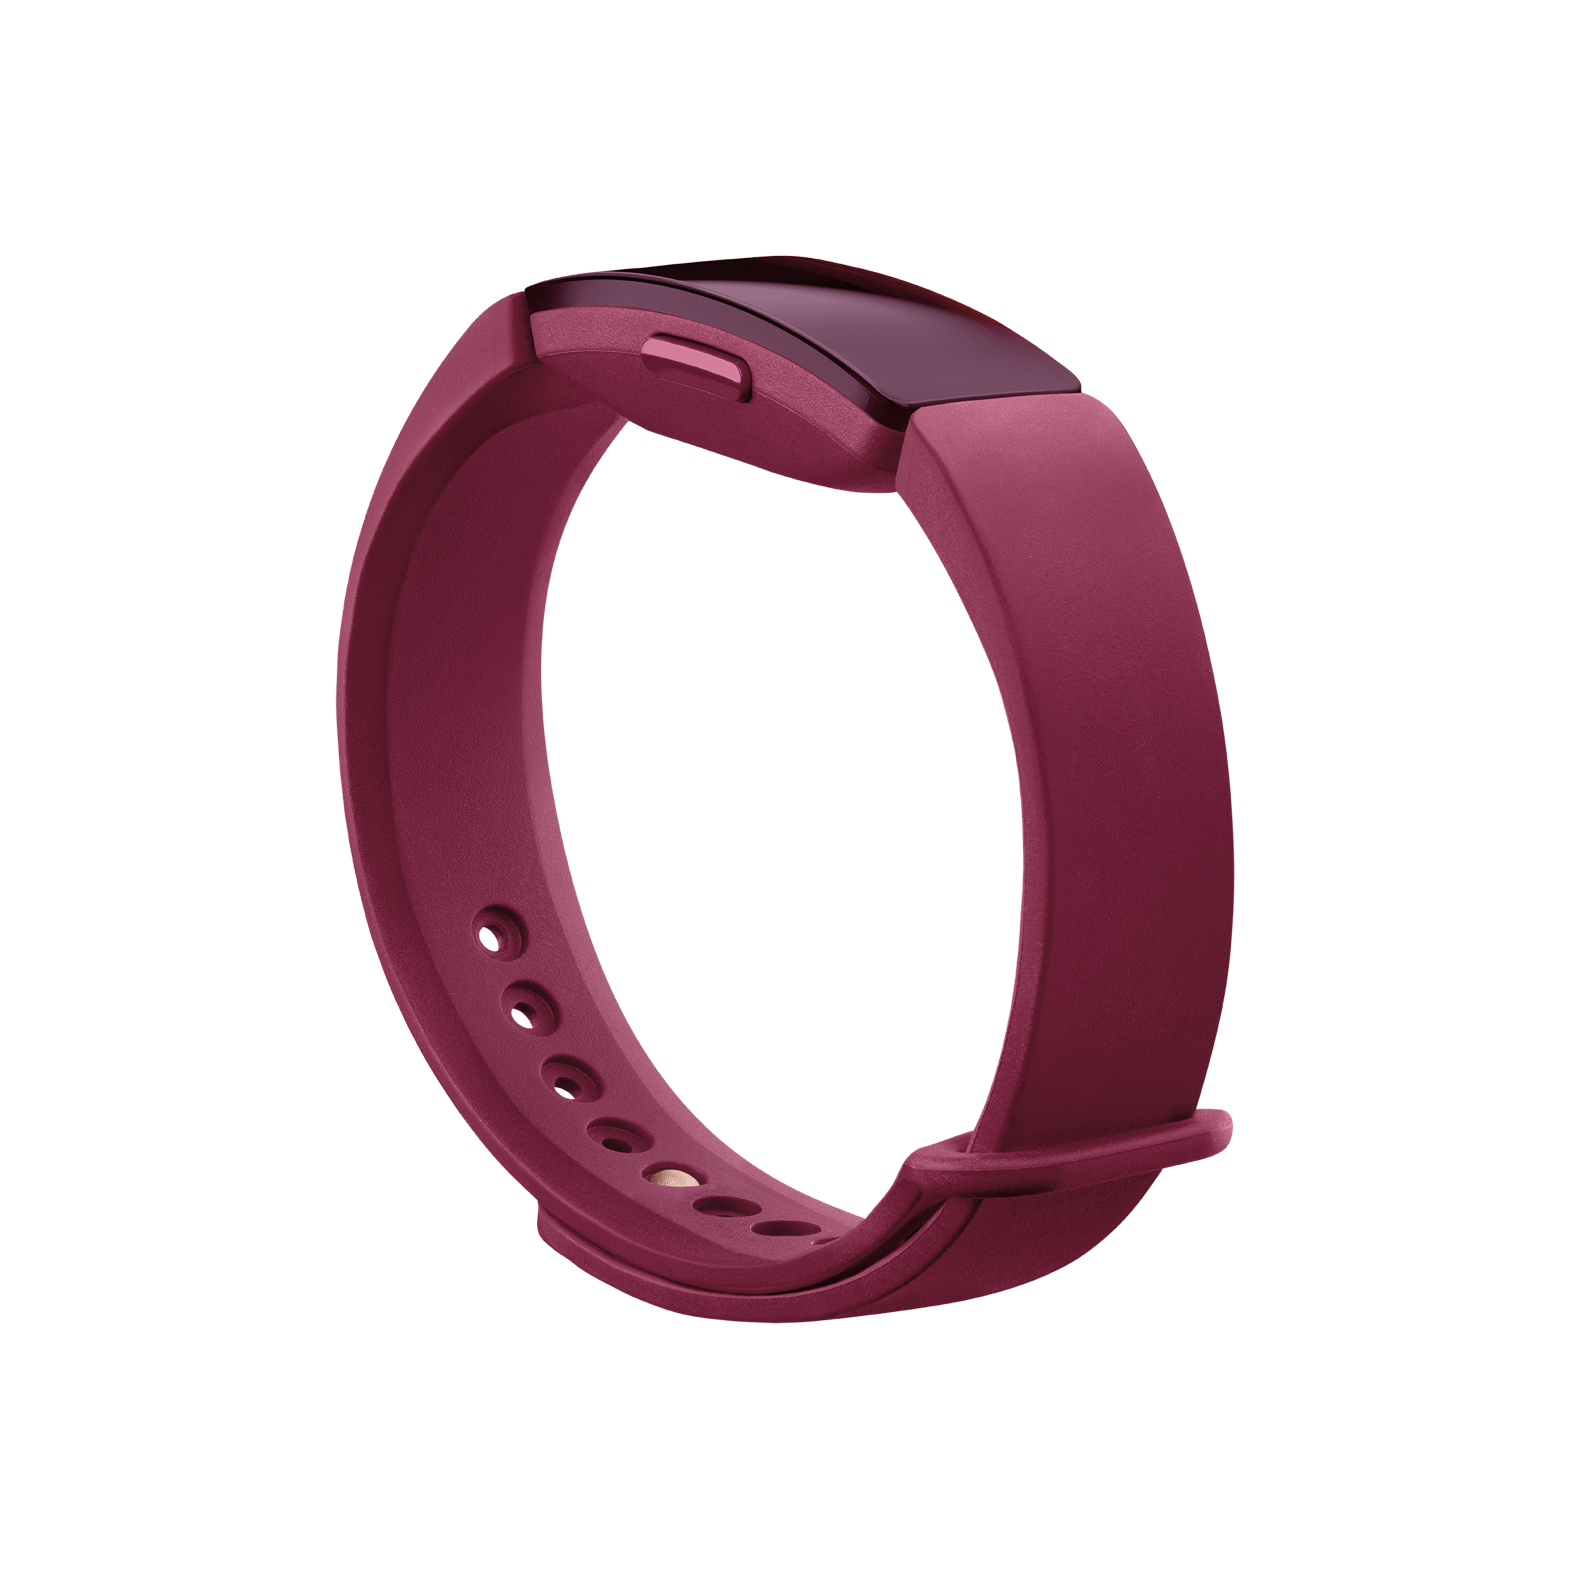 Klassisches Armband für Inspire & Inspire HR (Sangria) – Größe L